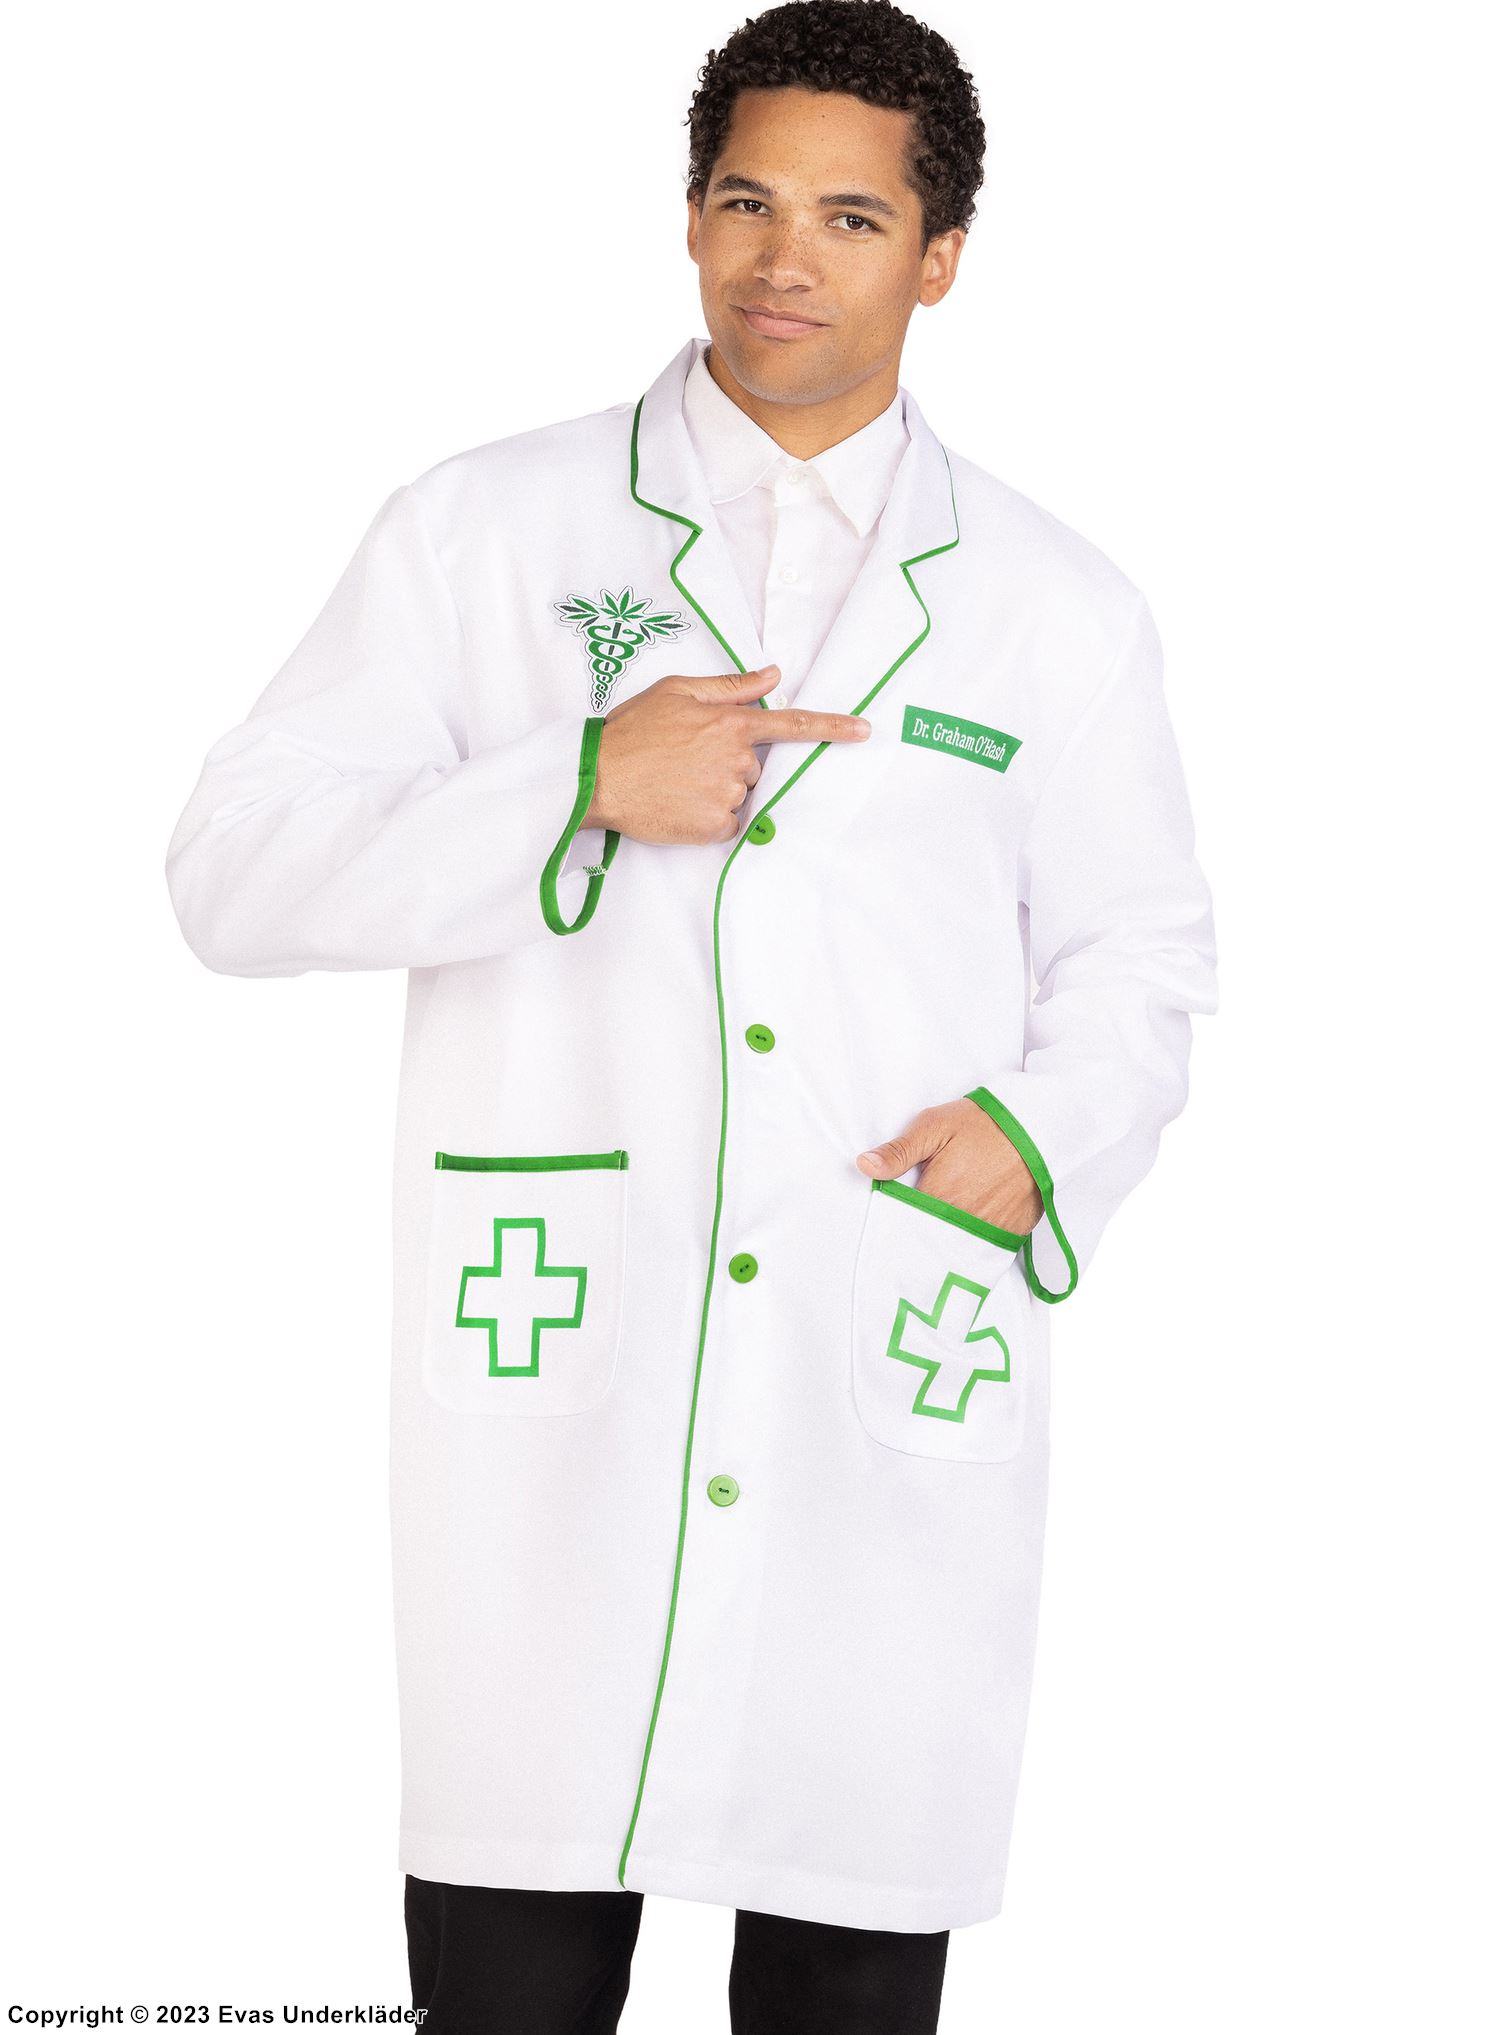 หมอ, ชุดแต่งกายแบบเสื้อแจ็คเก็ต, แขนยาว, กระเป๋า, กระดุม